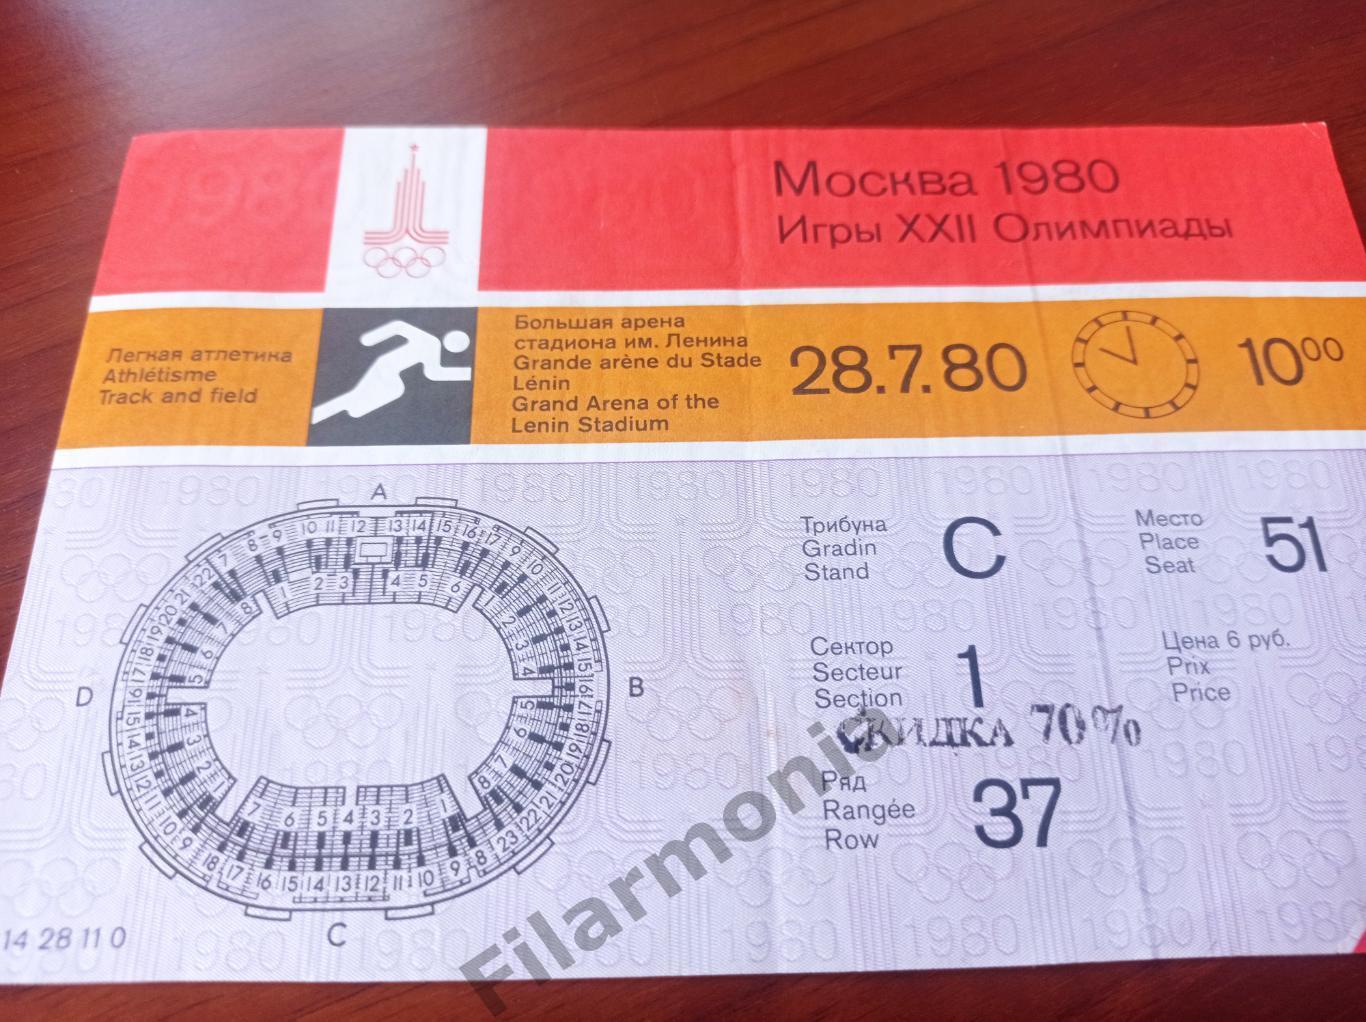 1980 Олимпиада Москва футбол легкая атлетика 28.07 10.00